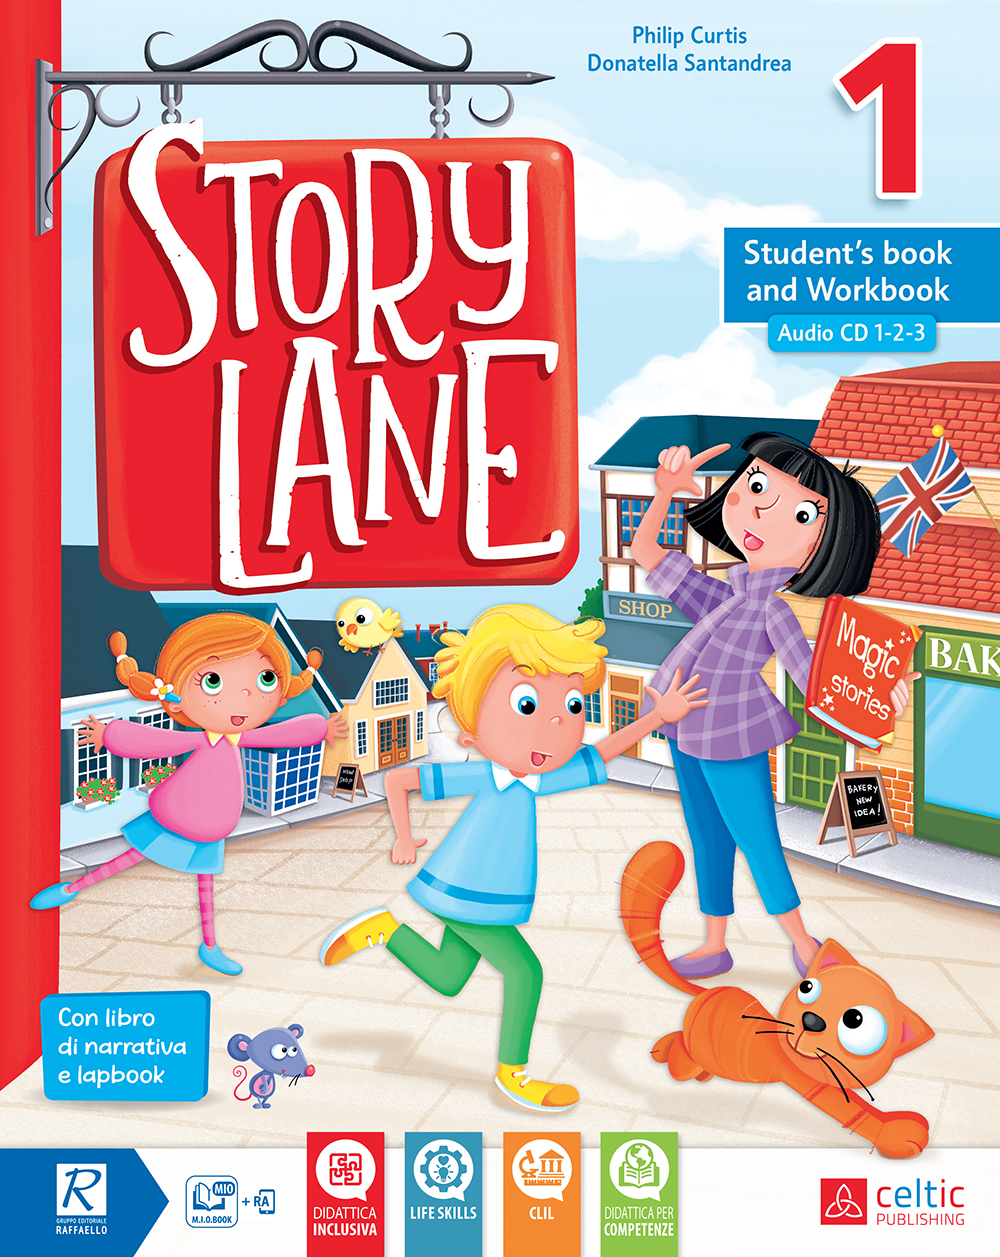 Story Lane Celtic Publishing